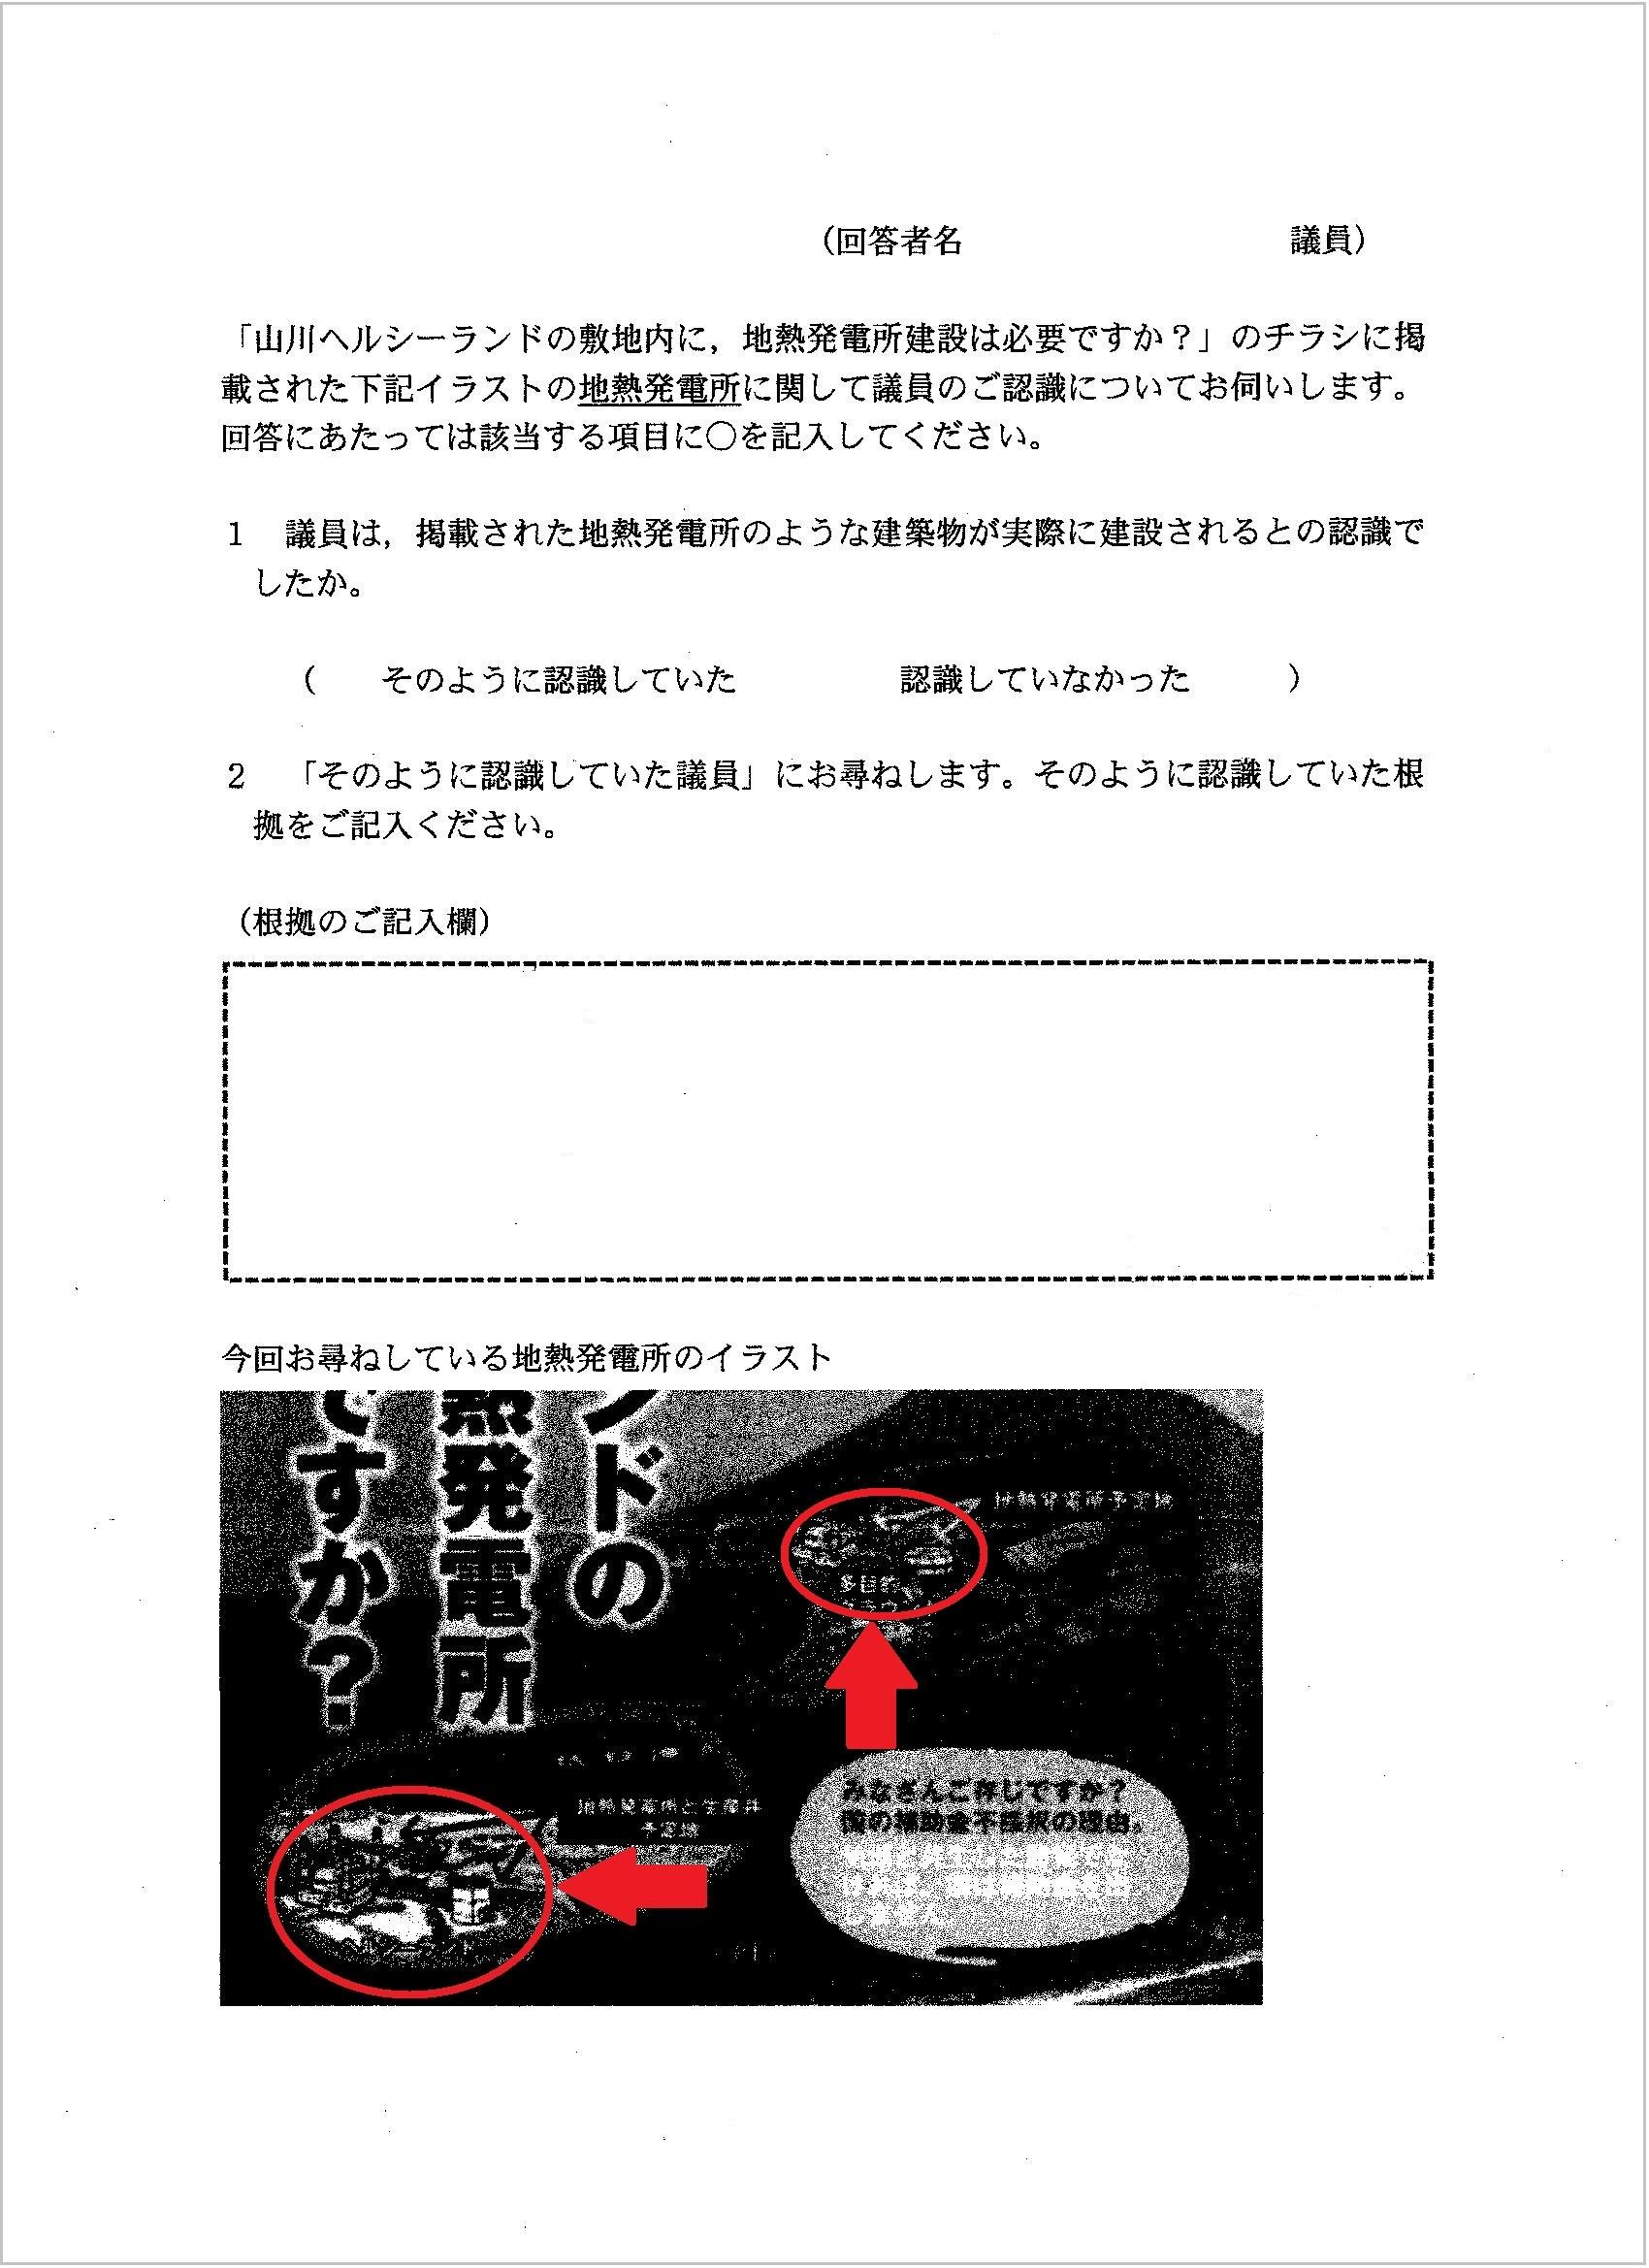 http://hunter-investigate.jp/news/7a682adfdad42f1ac986771d36f9d589dab78dc6.jpg